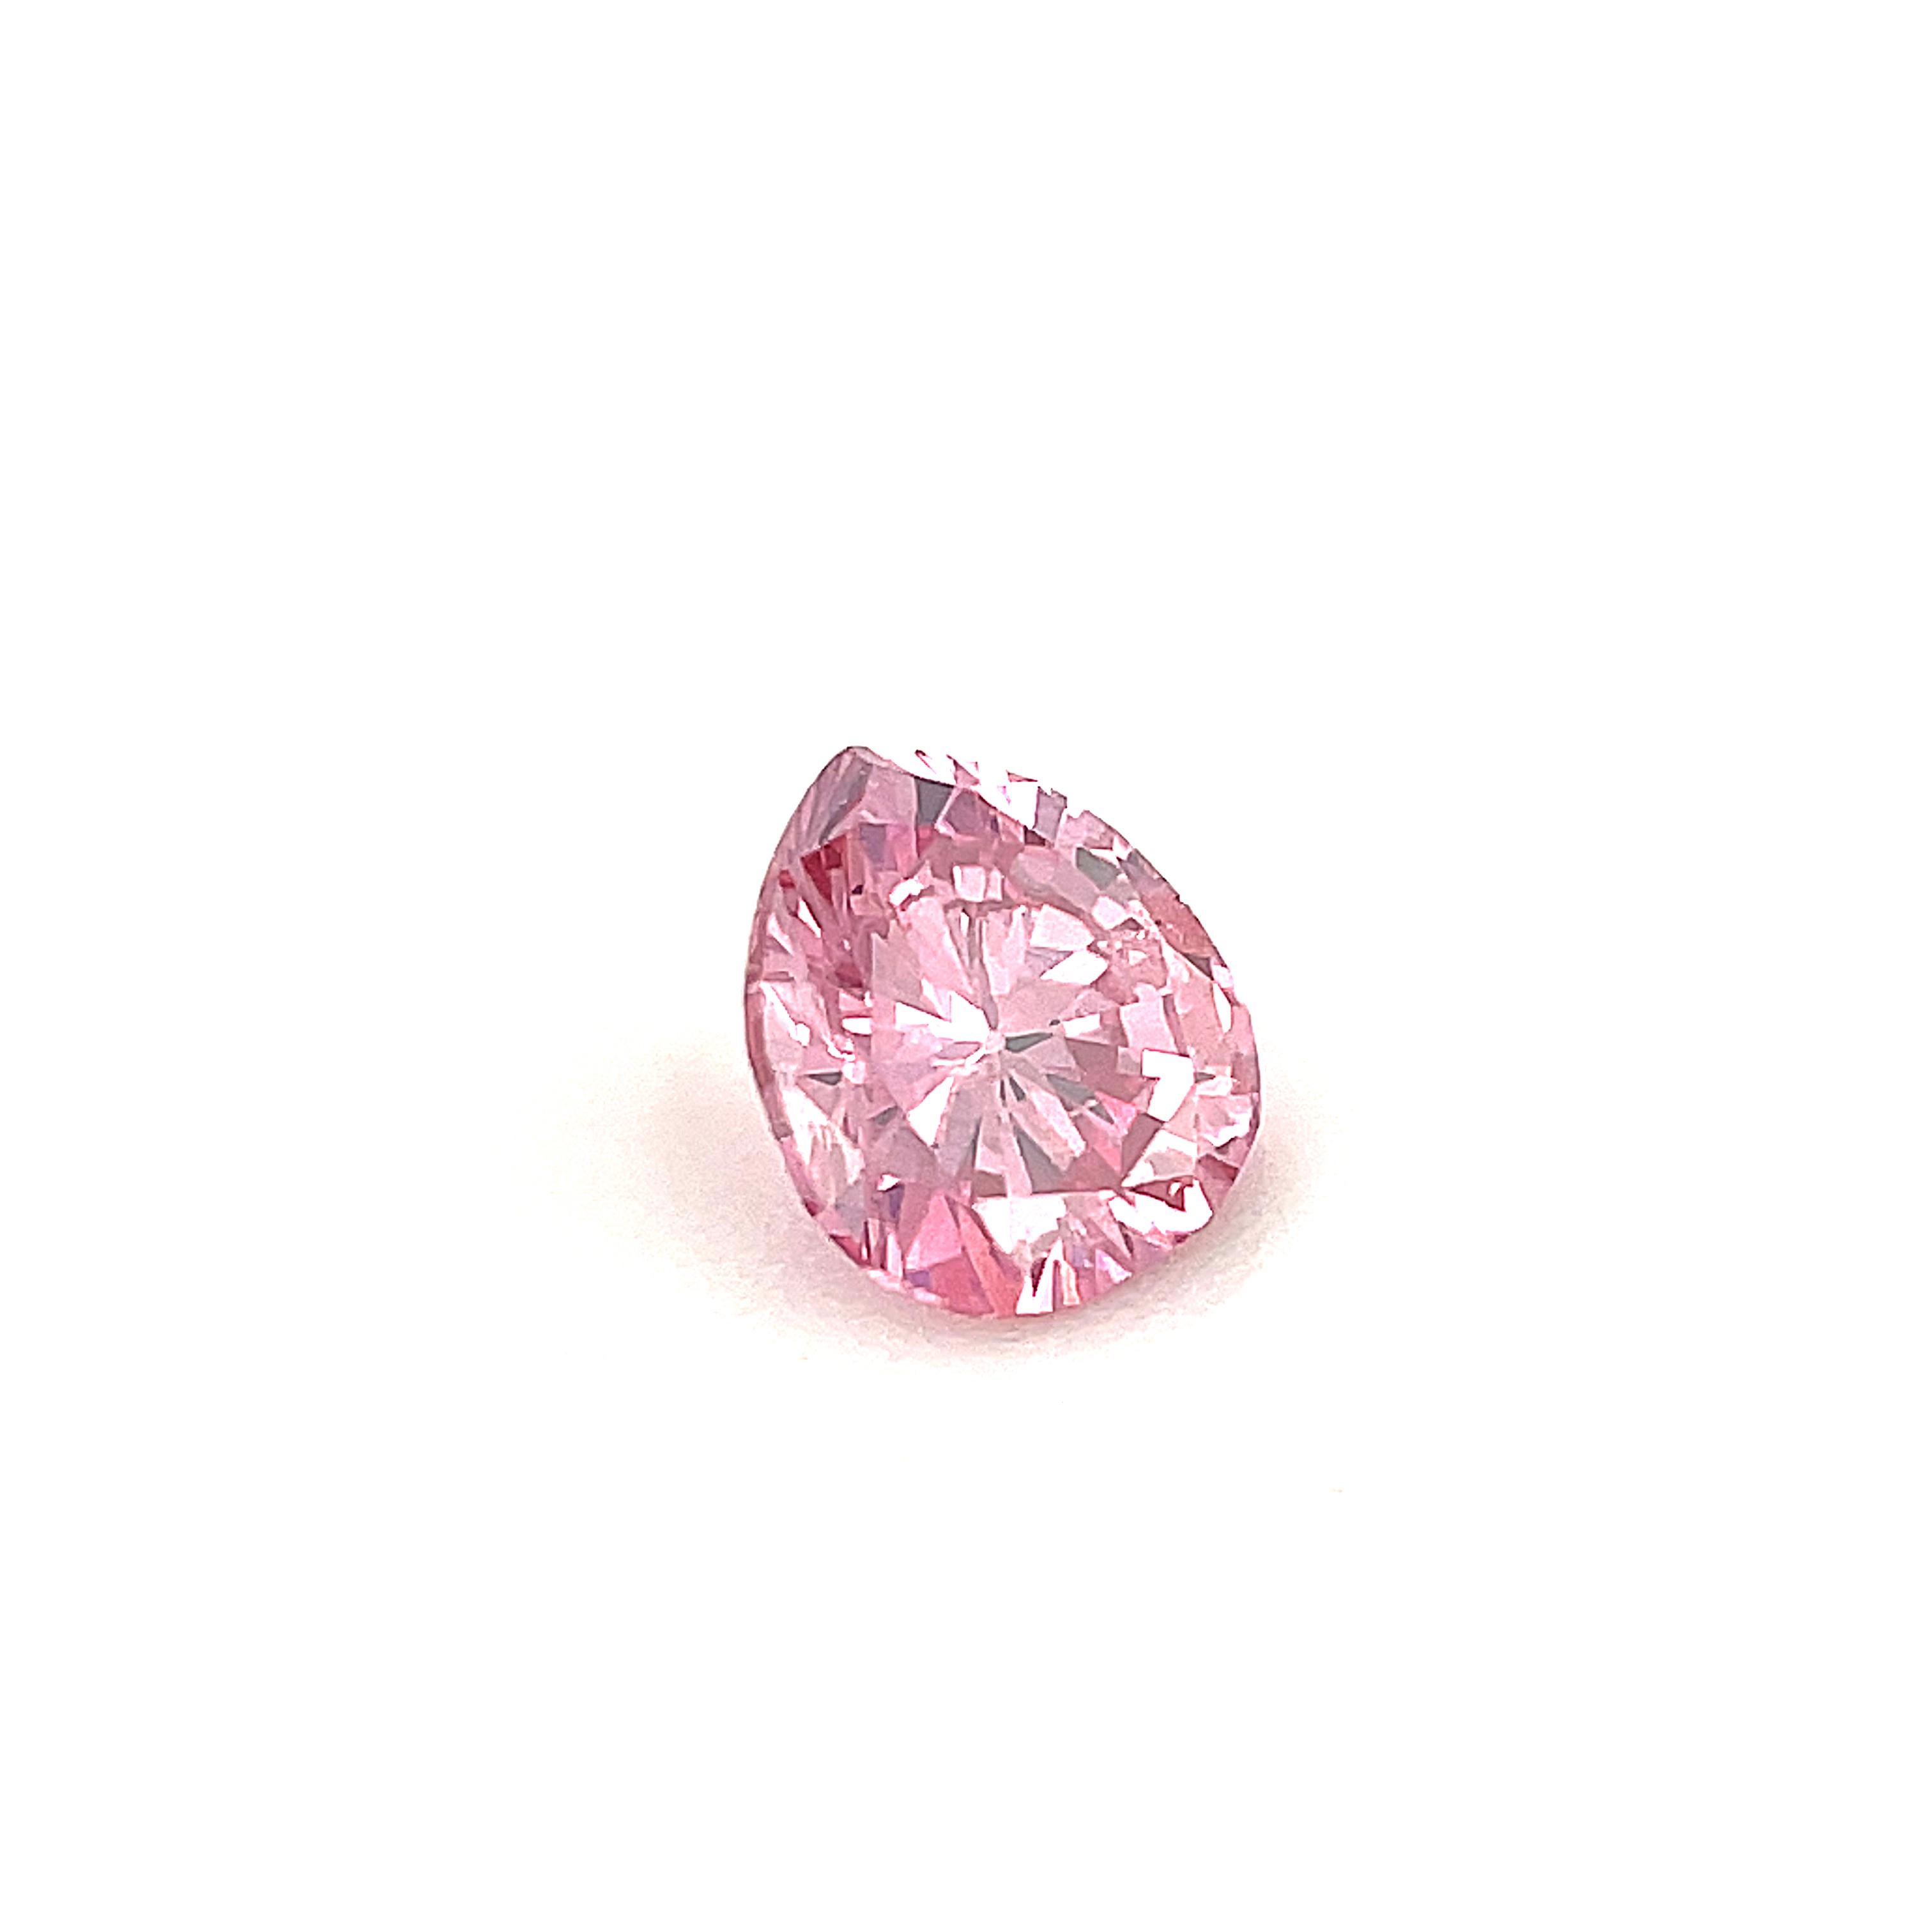 Fancy Intense Purplish Pink Natural Diamond, Loose .24 Carat Pear, GIA Certified For Sale 2